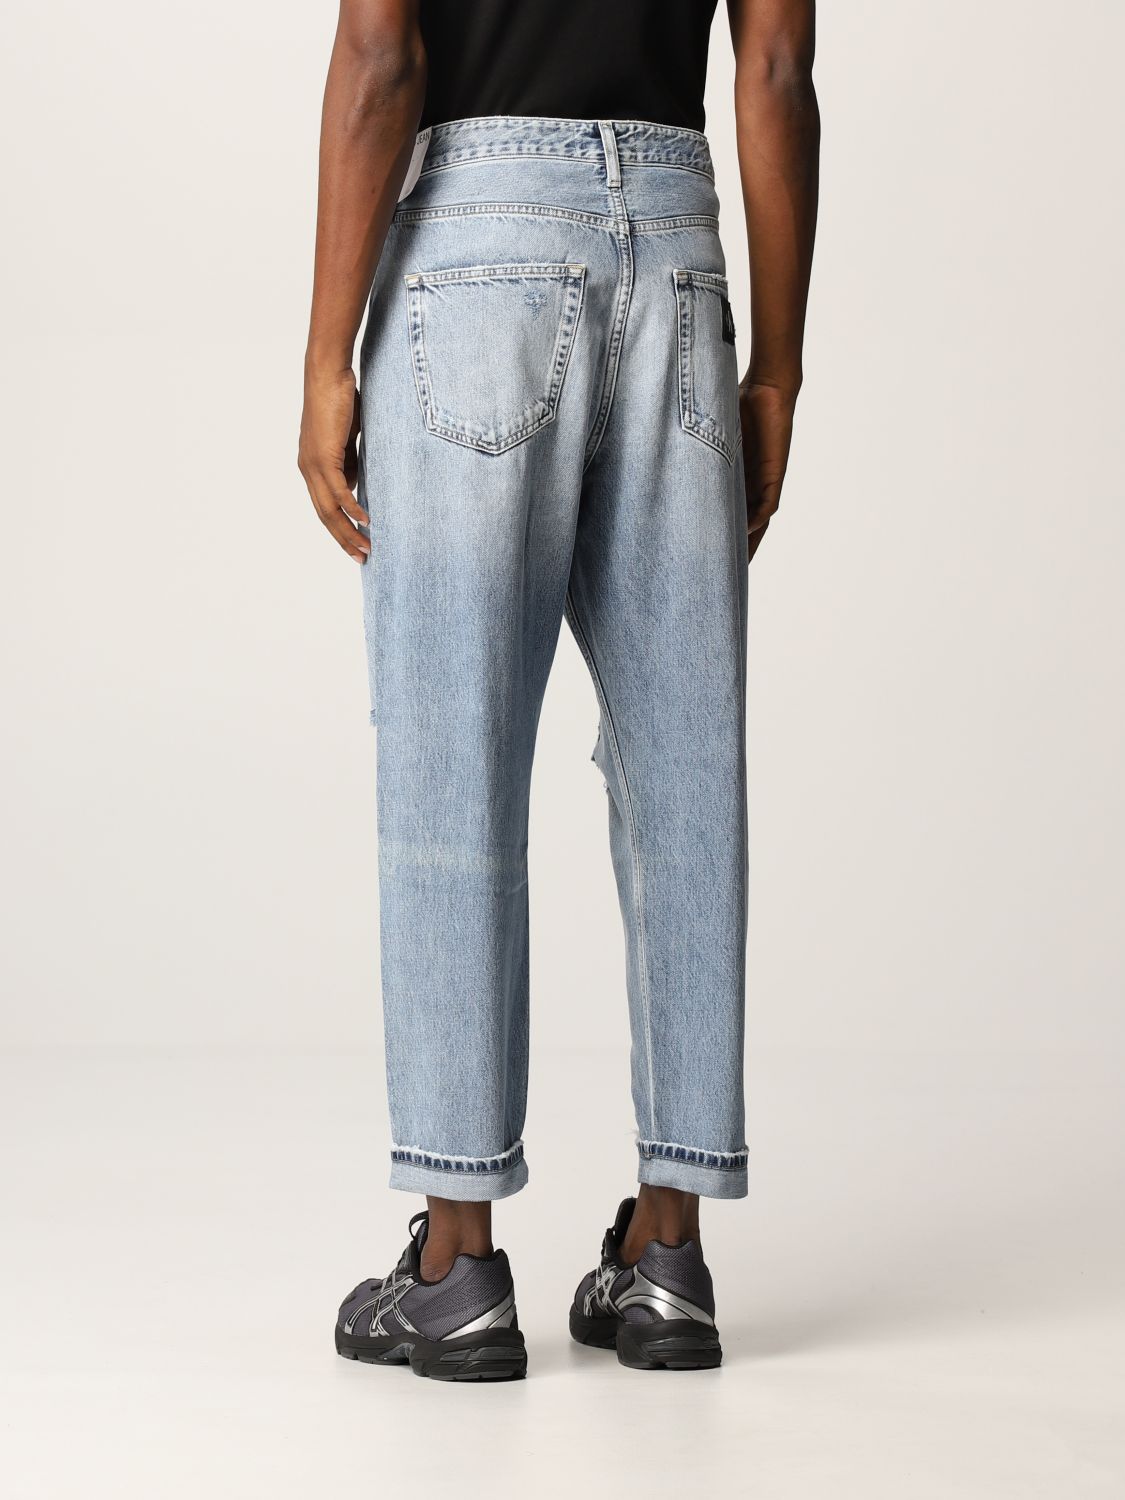 Calvin Klein Jeans Outlet: Jeans men ...